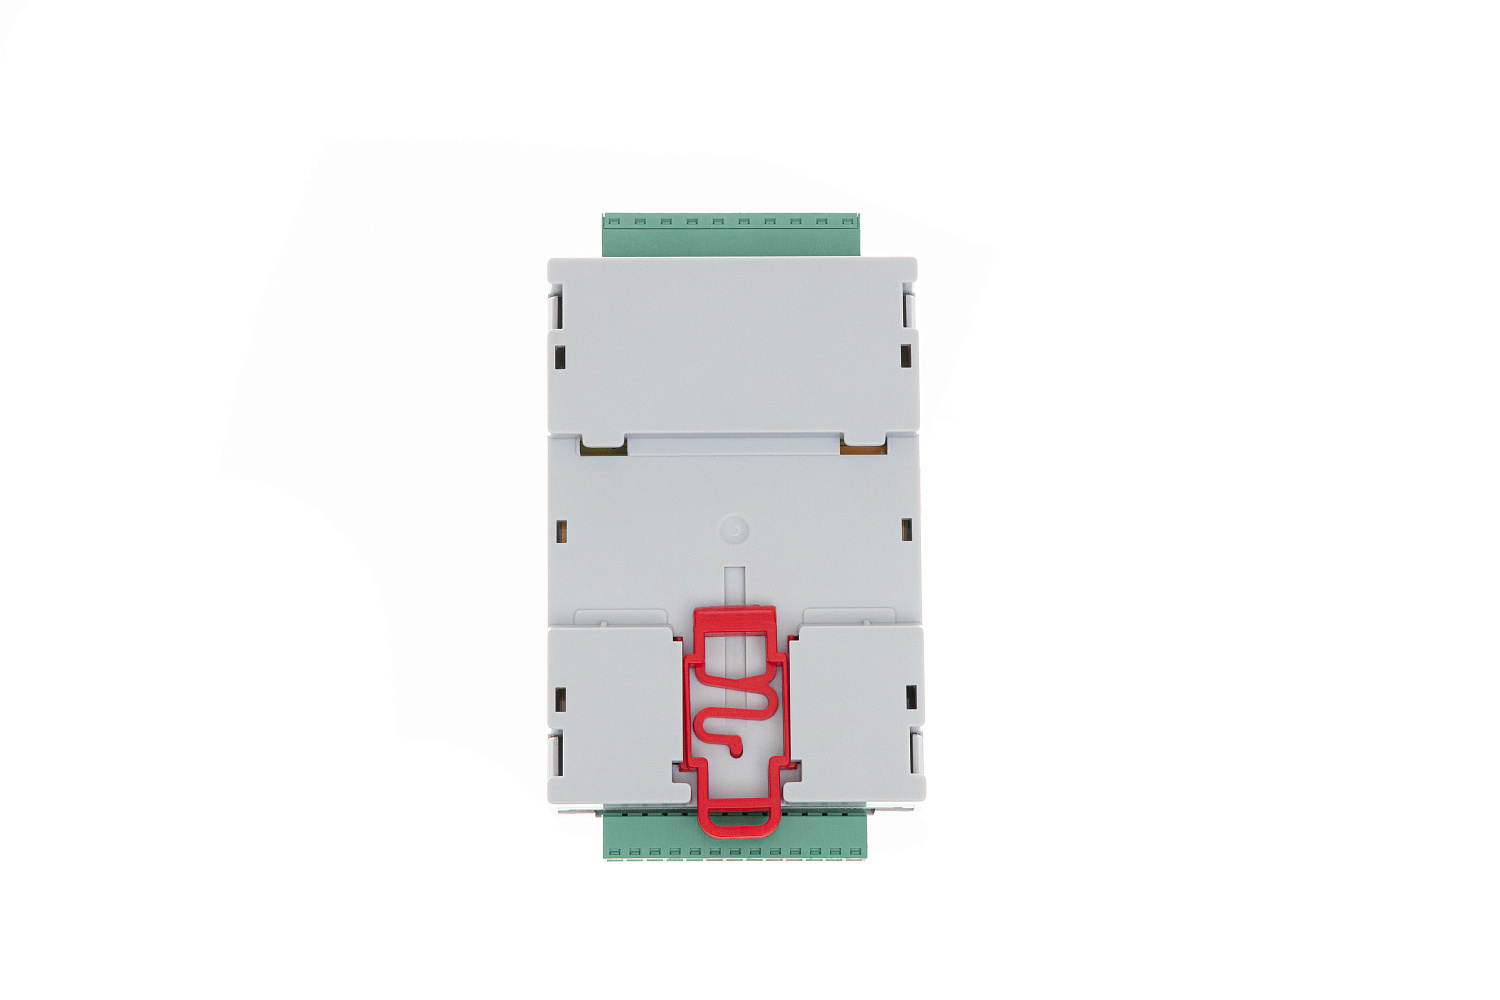 Комплект для вент установок ДУ25-20 (6,3) с контроллером ECL-3R AHU Ридан 088R0044